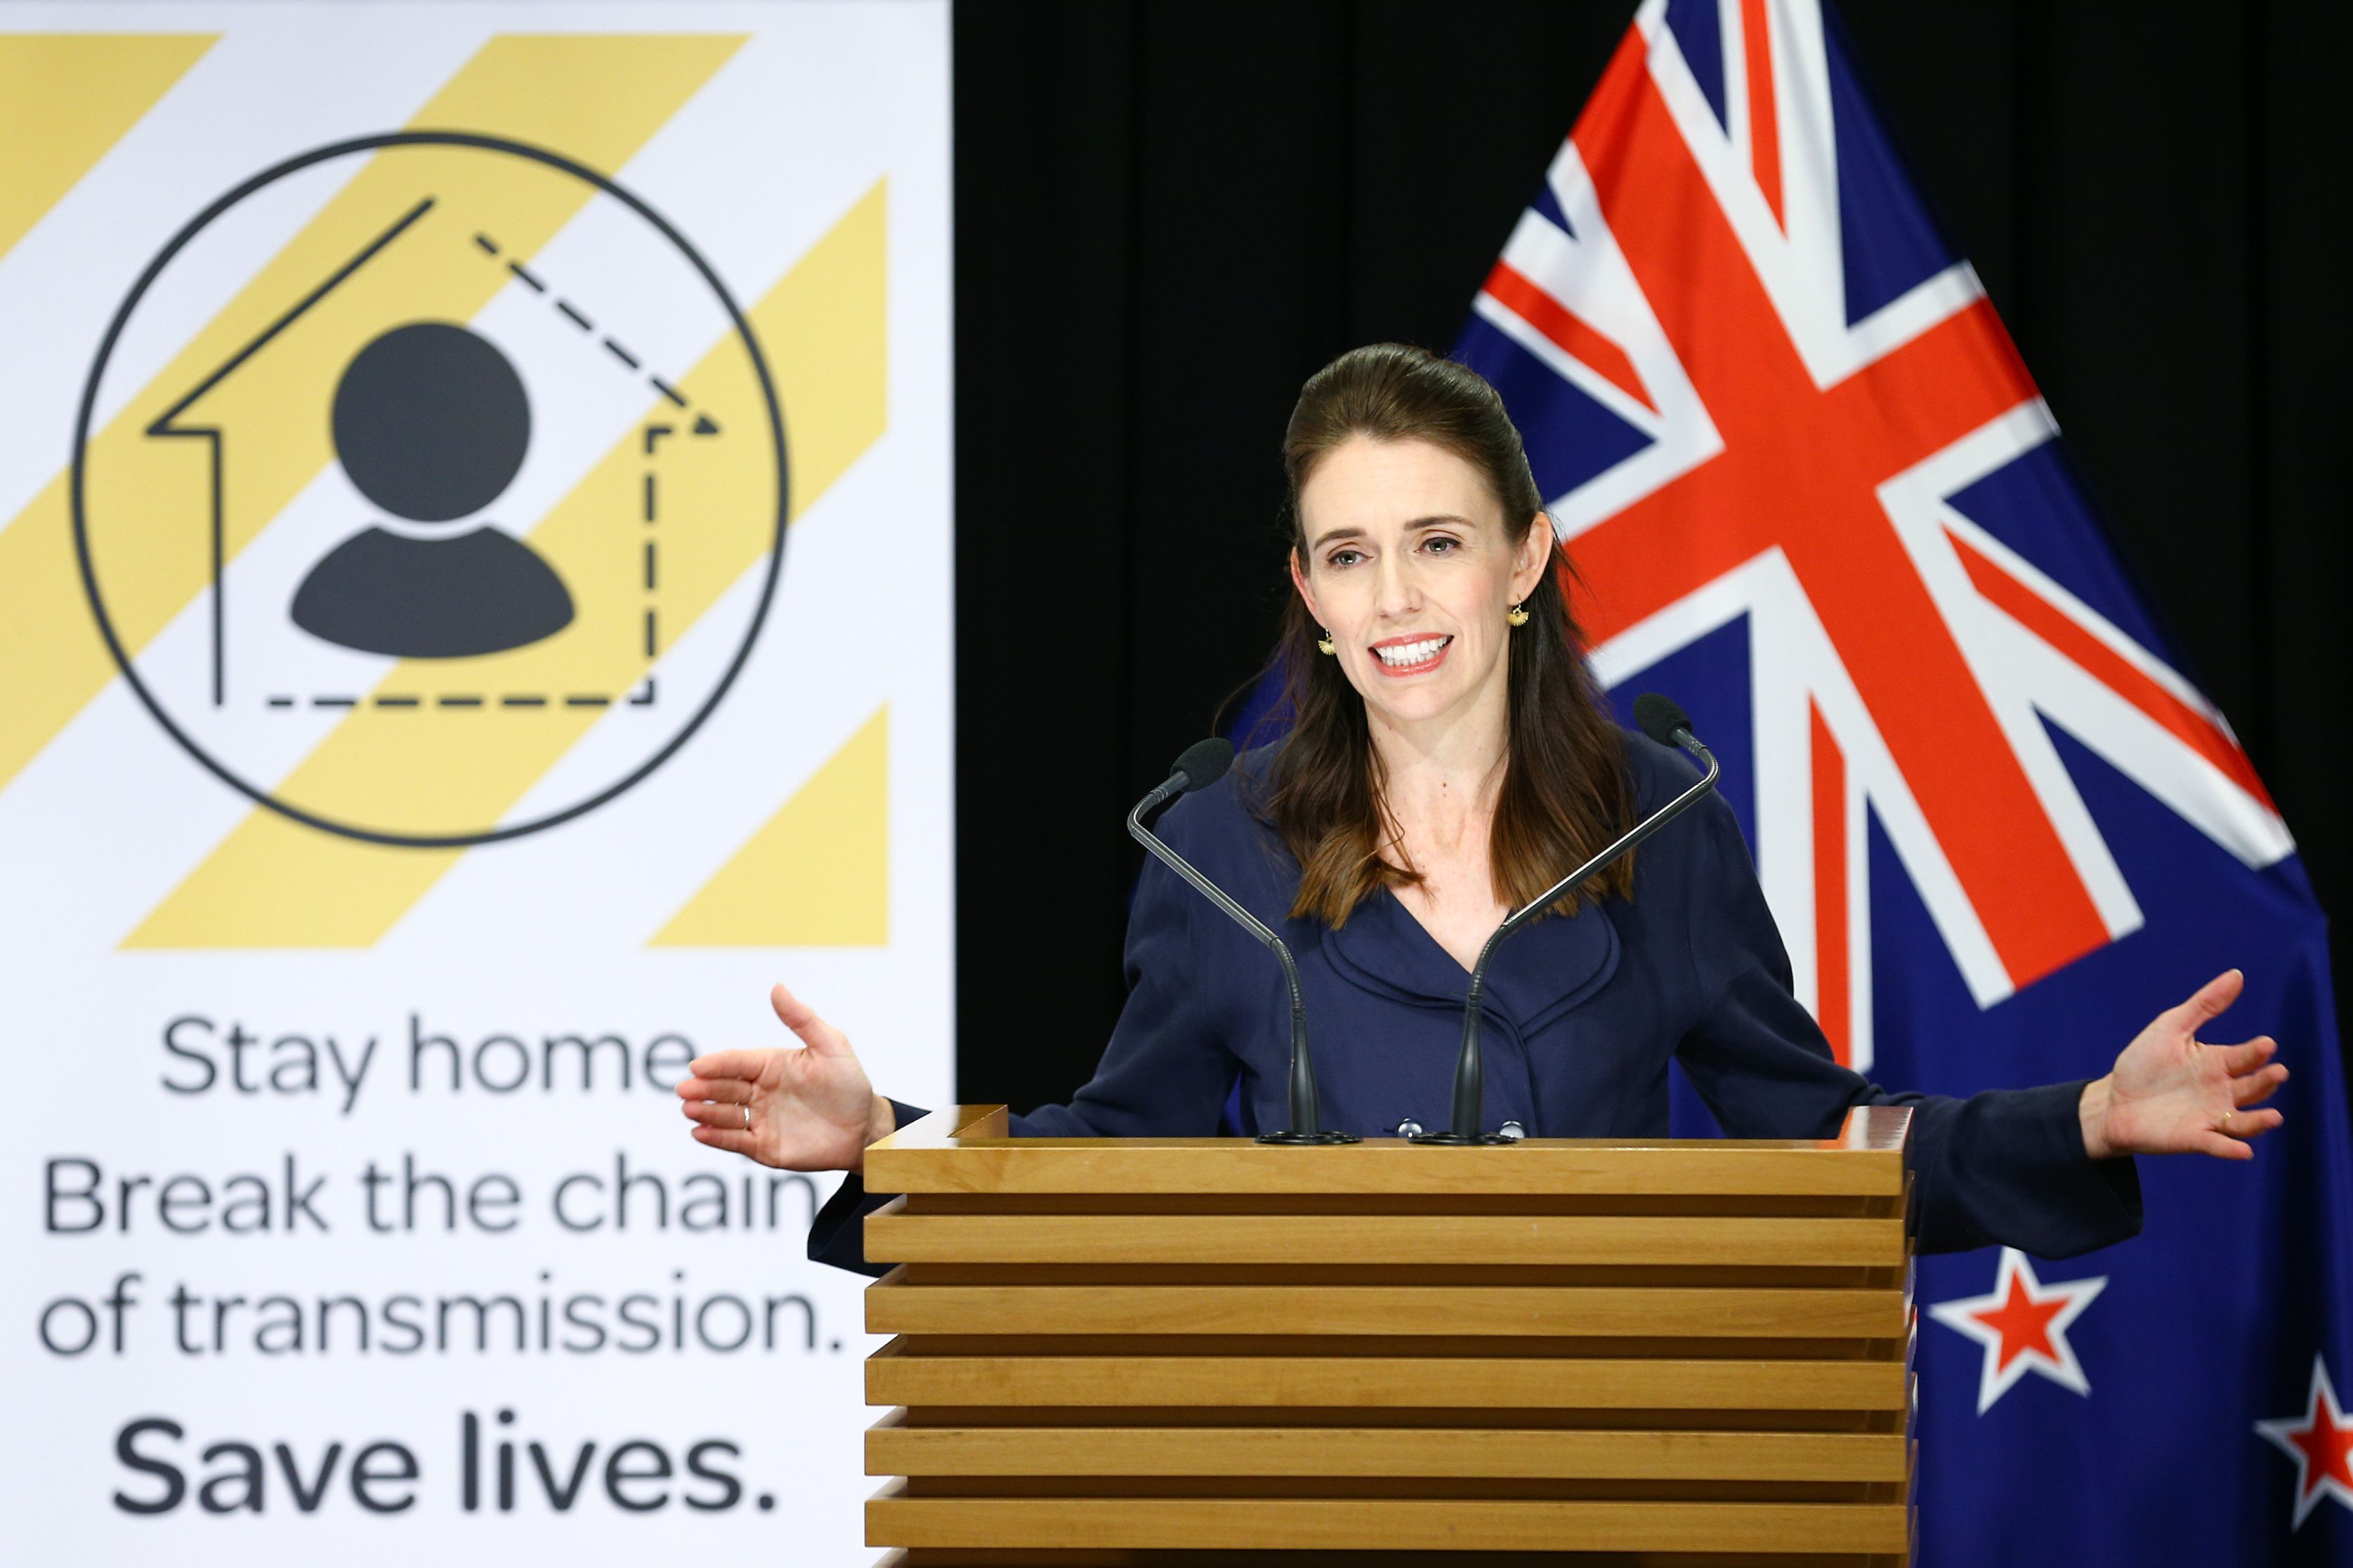 Noua Zeelandă a învins din nou coronavirusul, afirmă premierul Jacinda Ardern